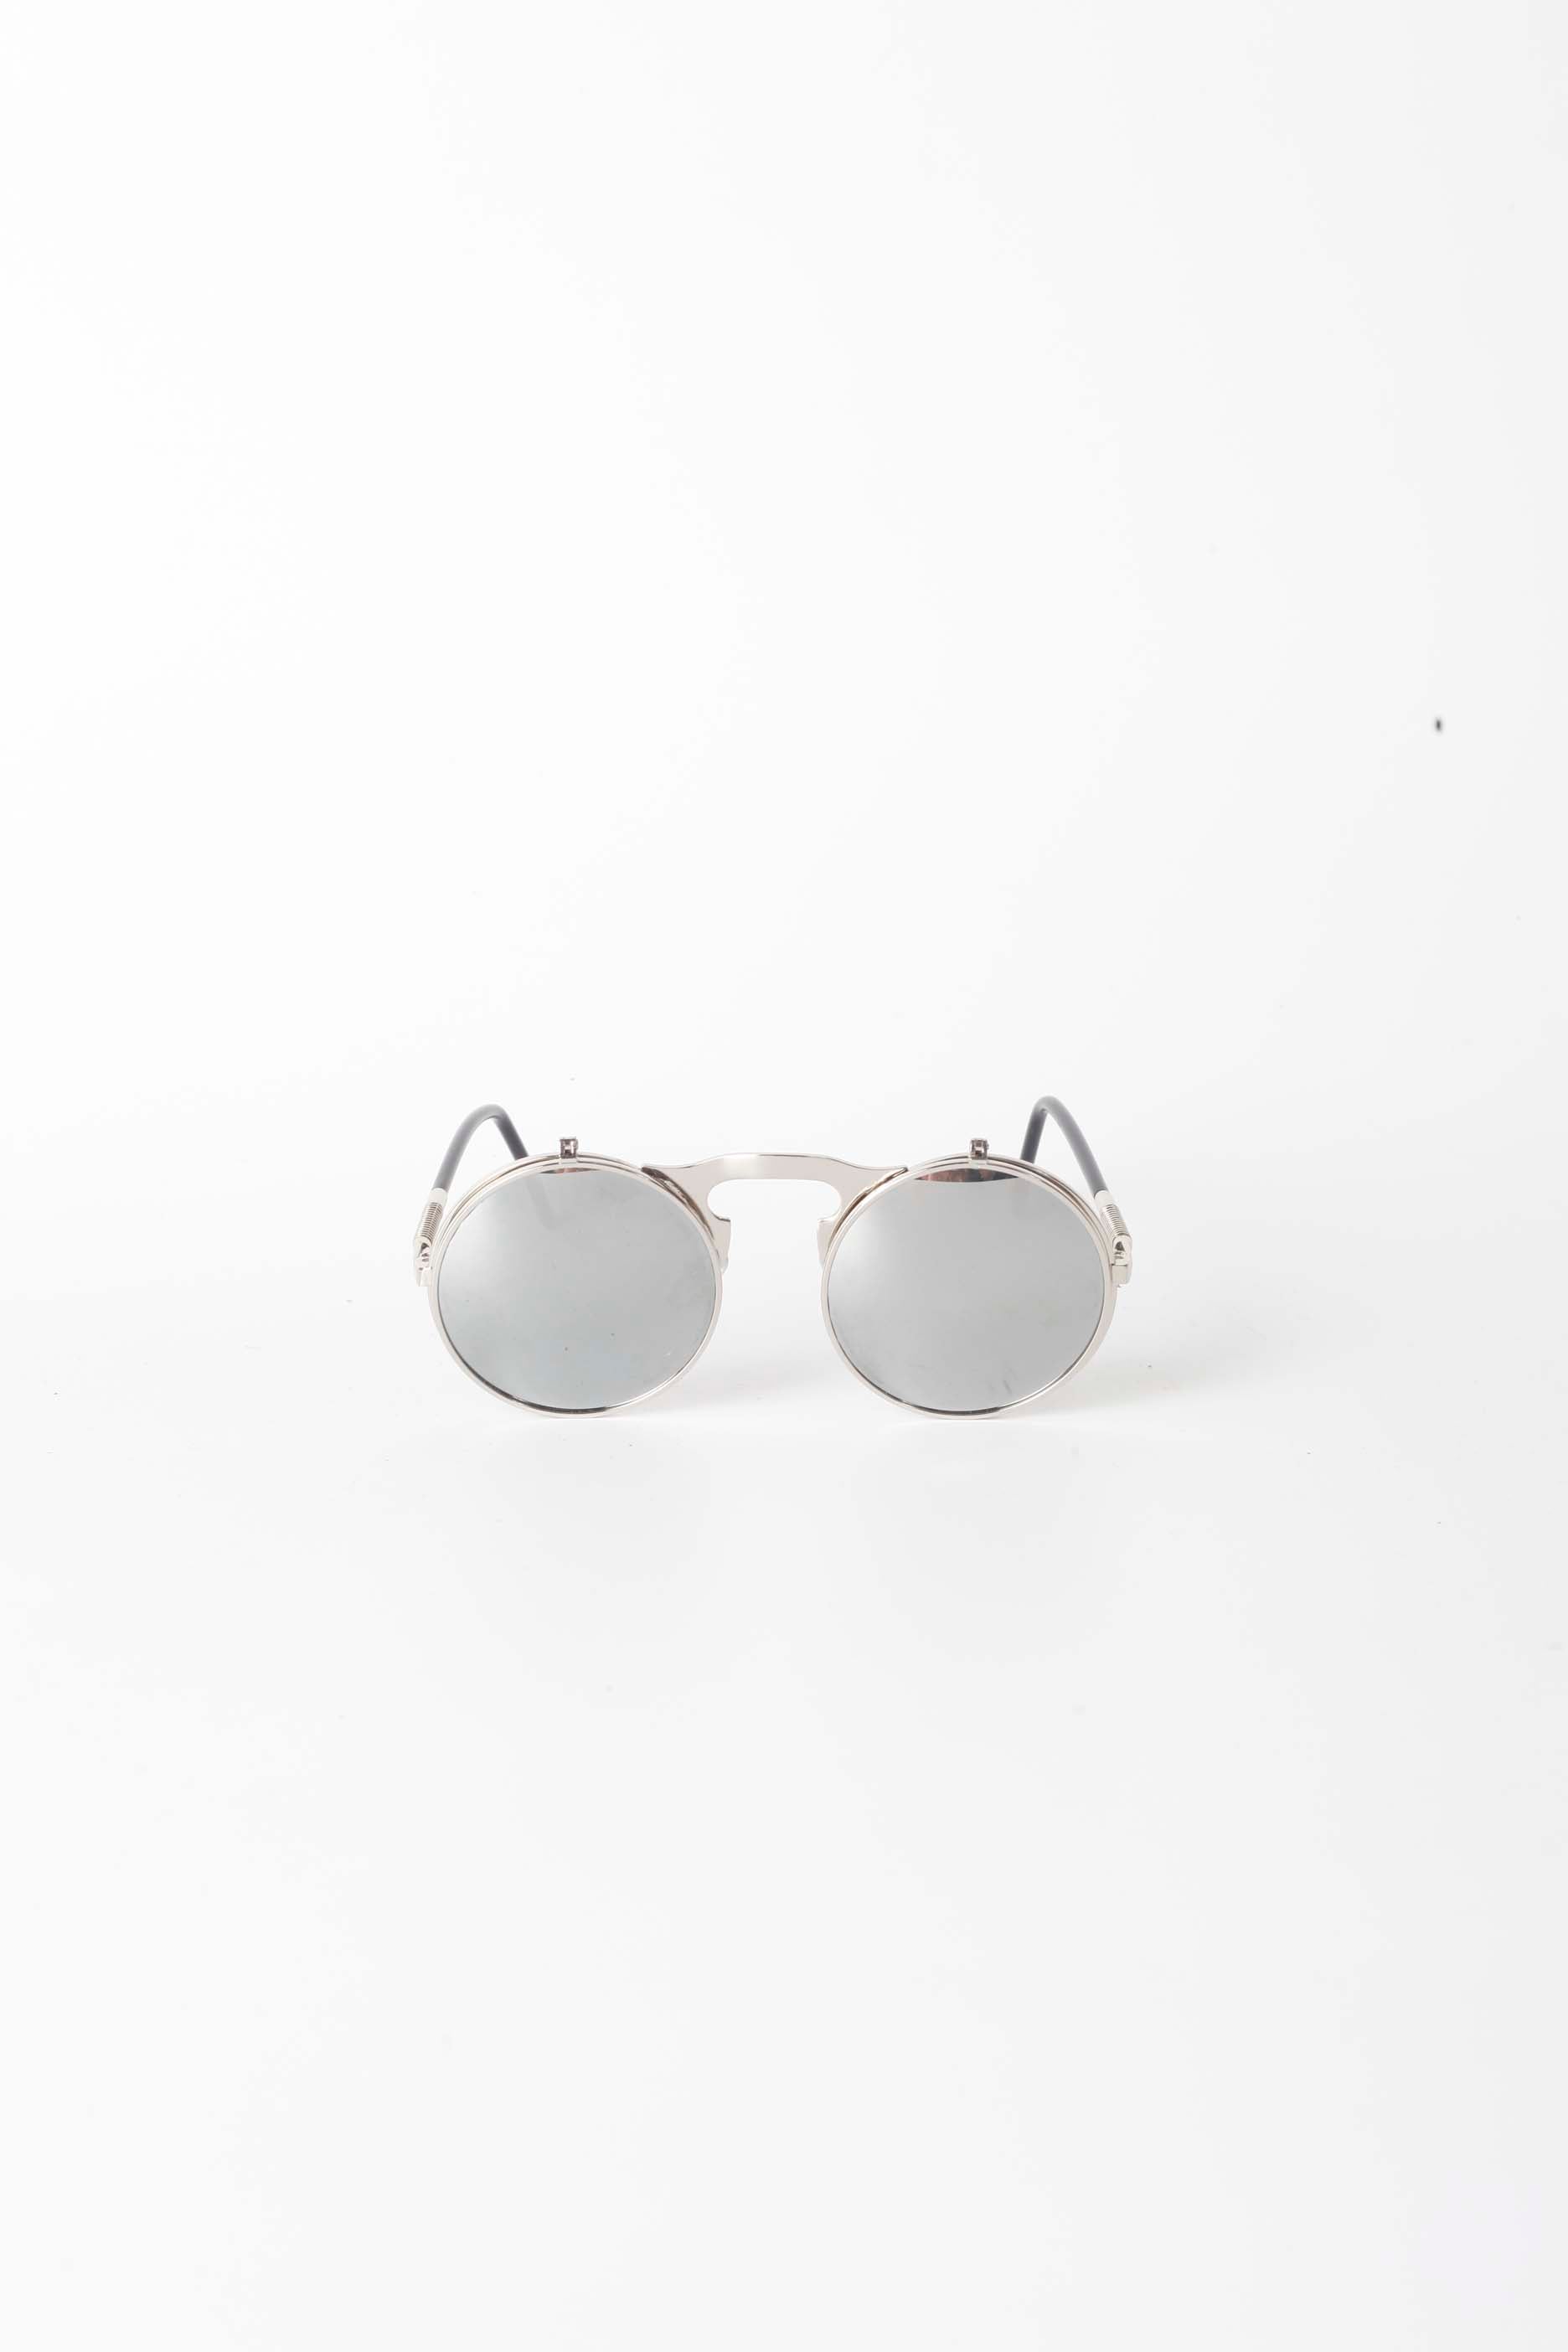 Round Flip Up Mirrored Sunglasses